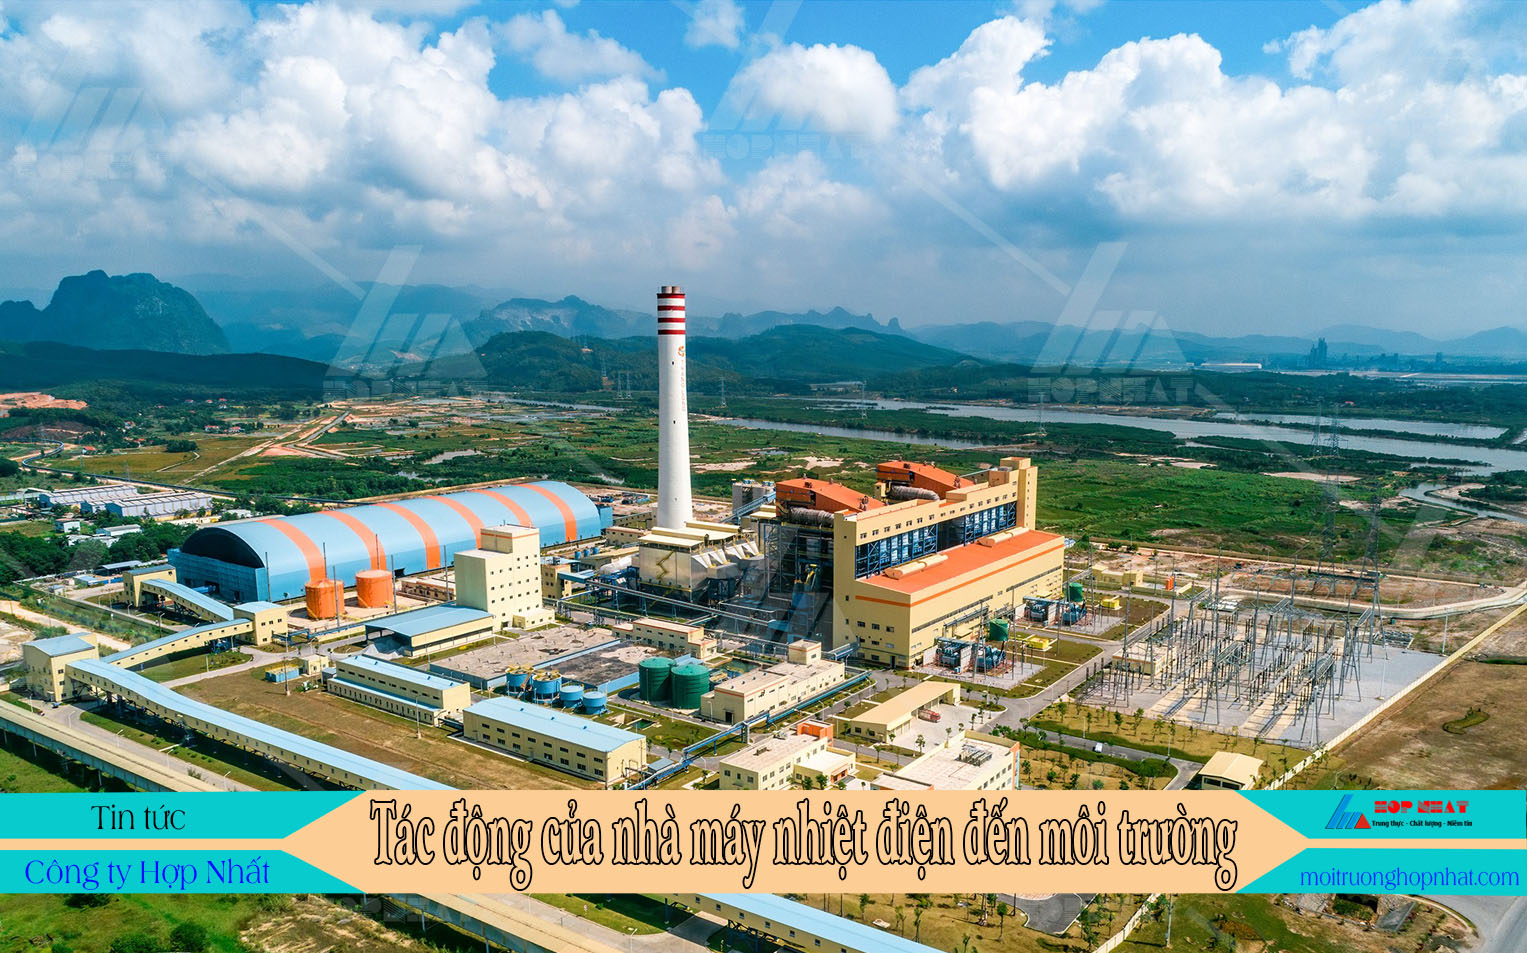 Tác động của nhà máy nhiệt điện đến môi trường